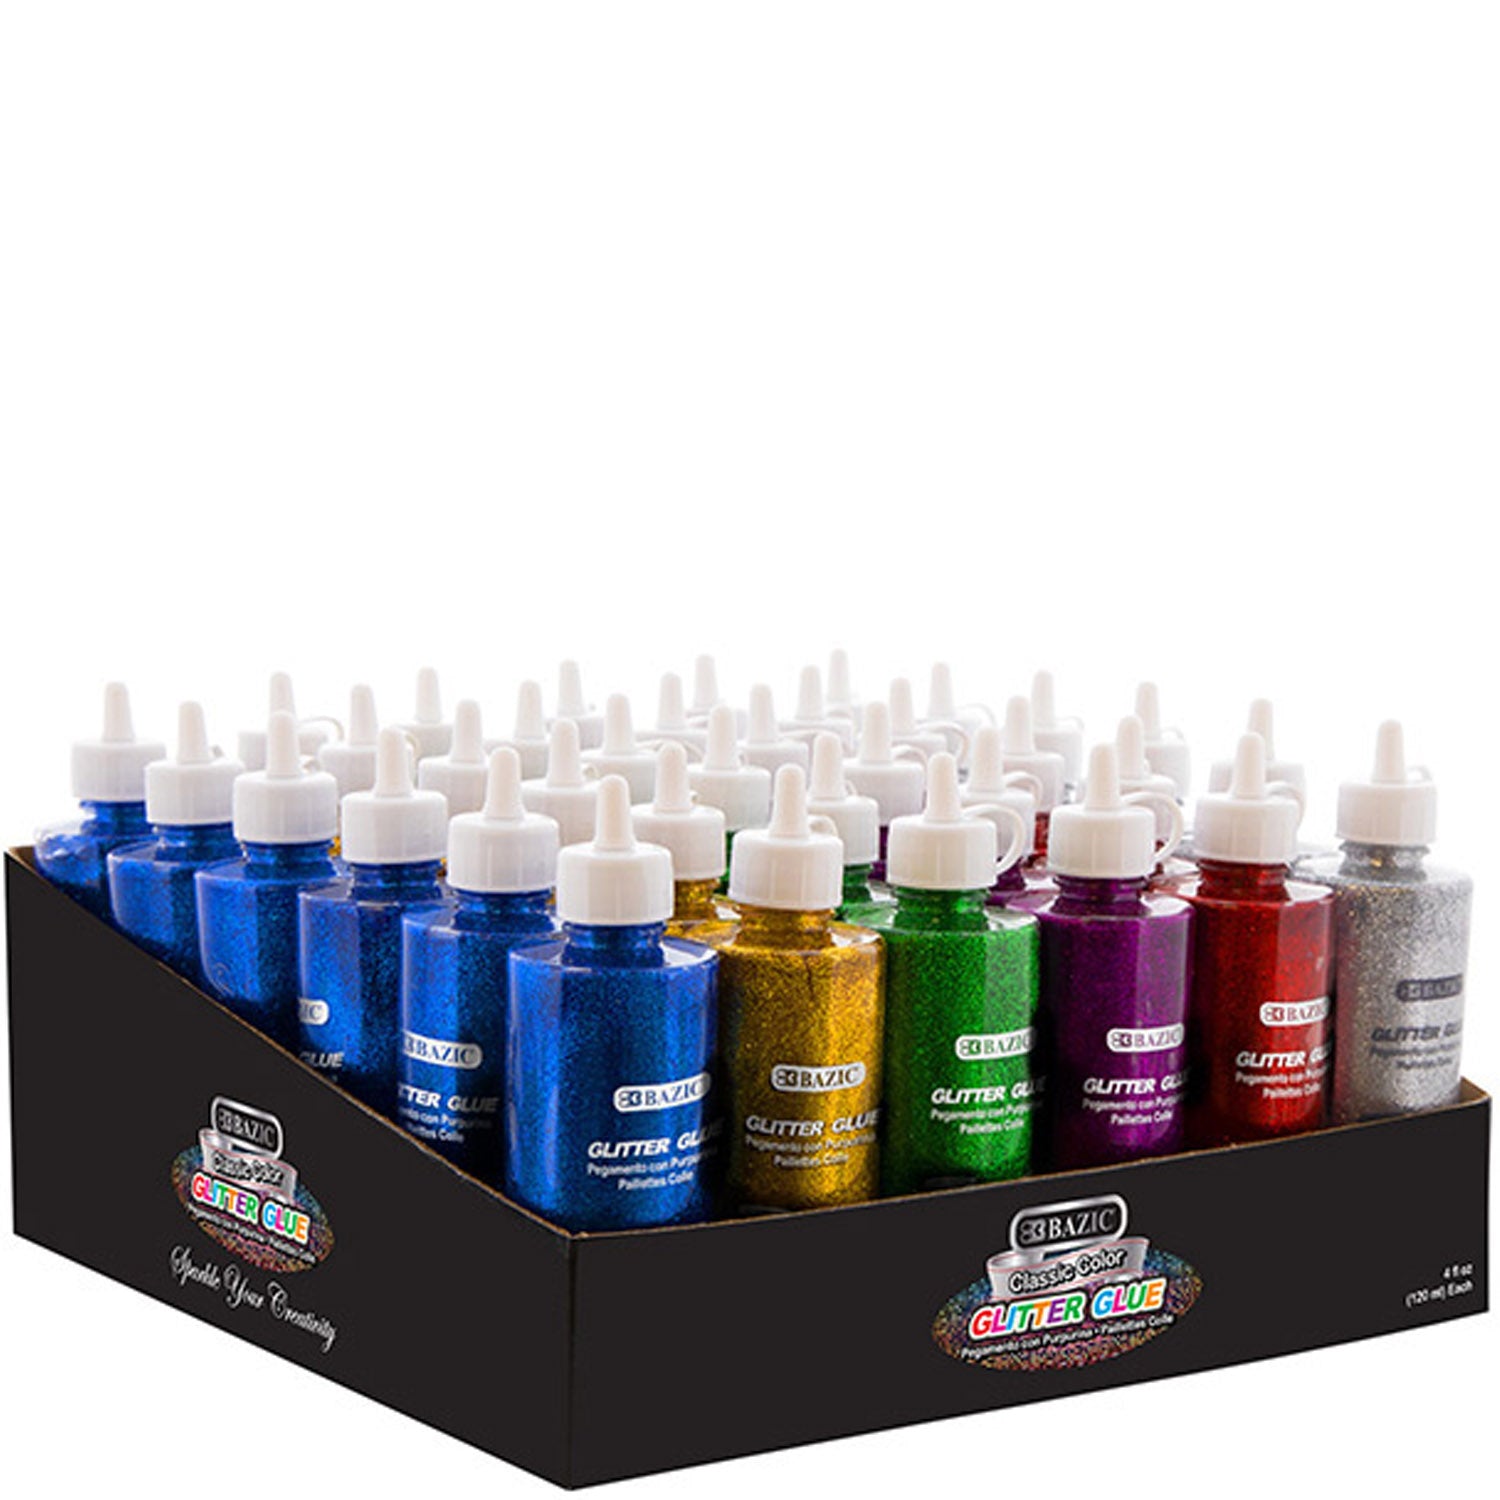 Classic Color Glitter Glue Washable Glowing Non-toxic | 4FL OZ (120ml)